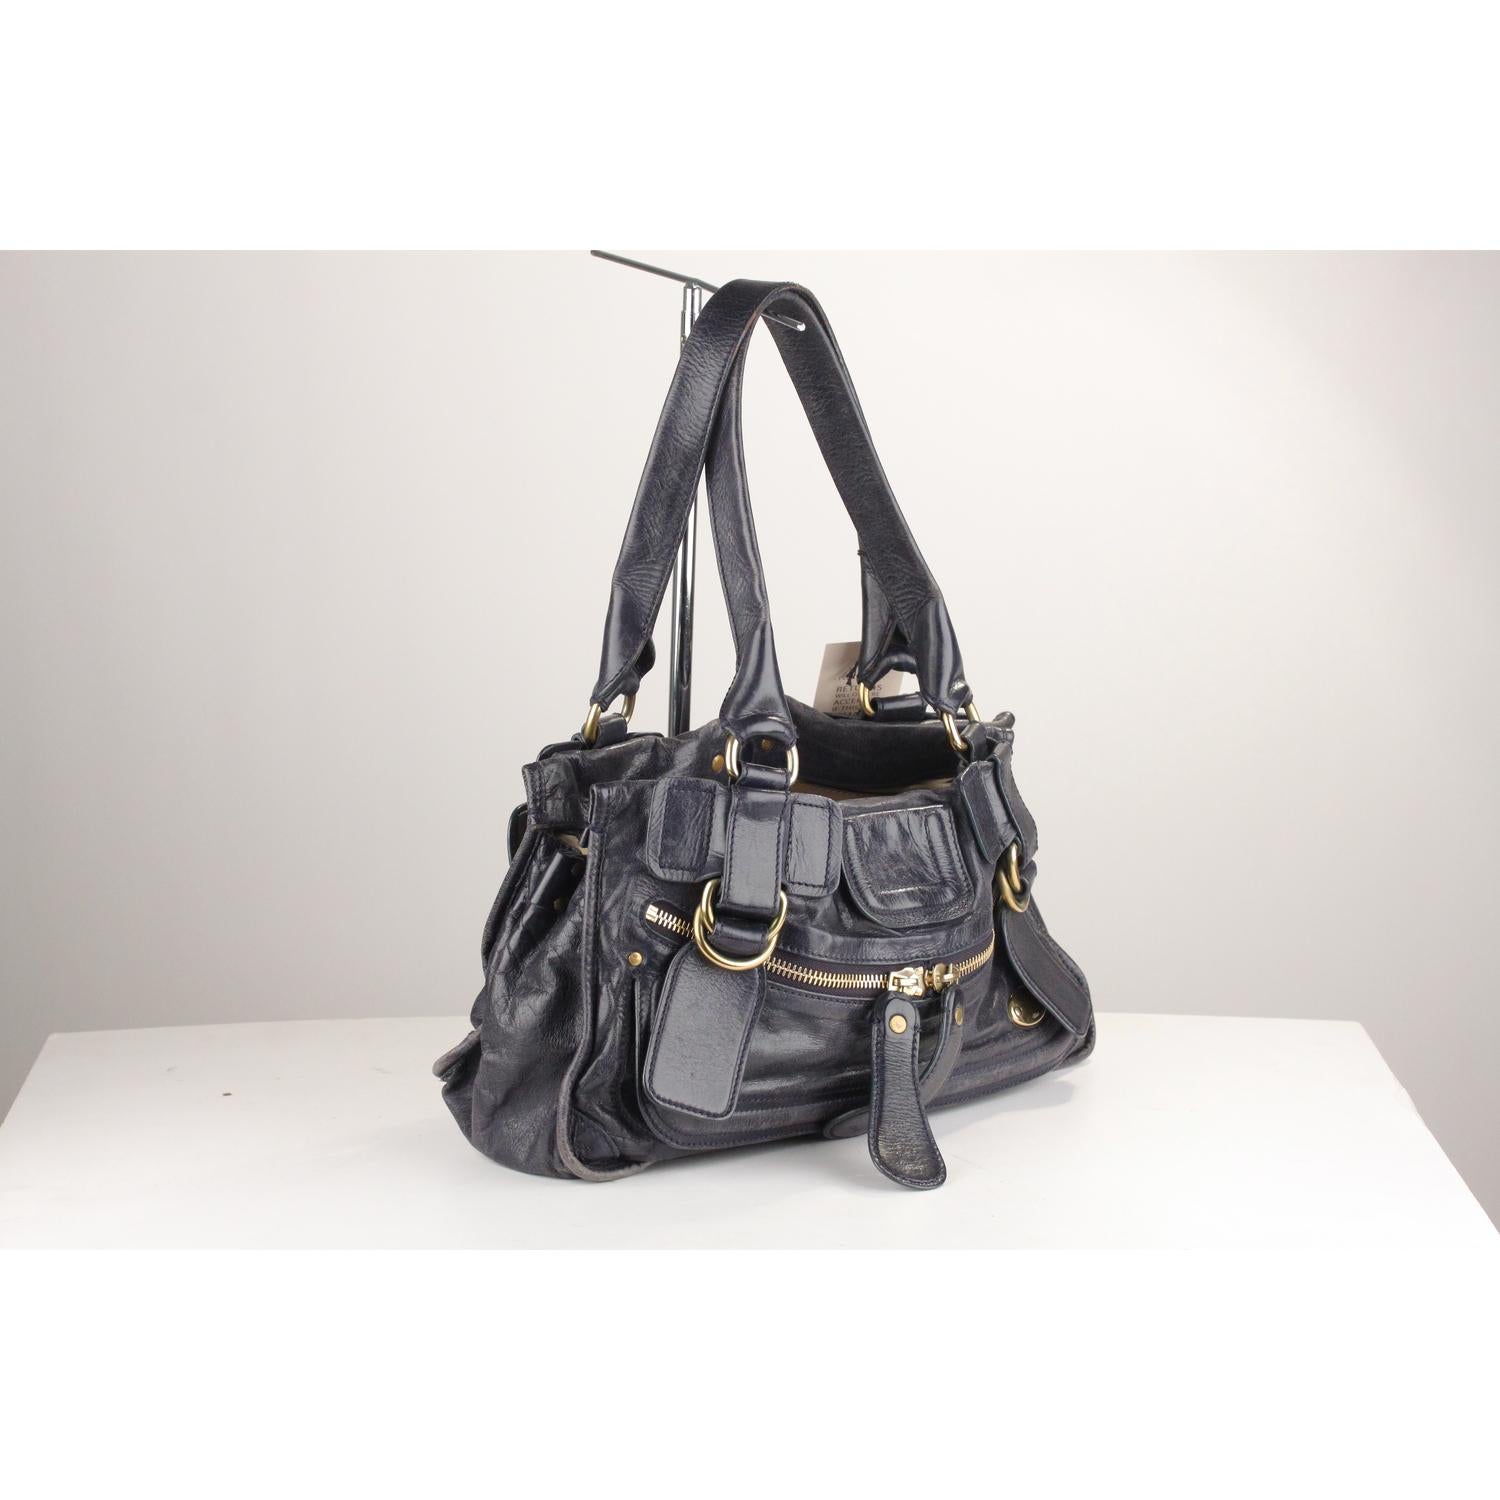 Gray Chloe Blue Leather Bay Bag Tote Shoulder Bag